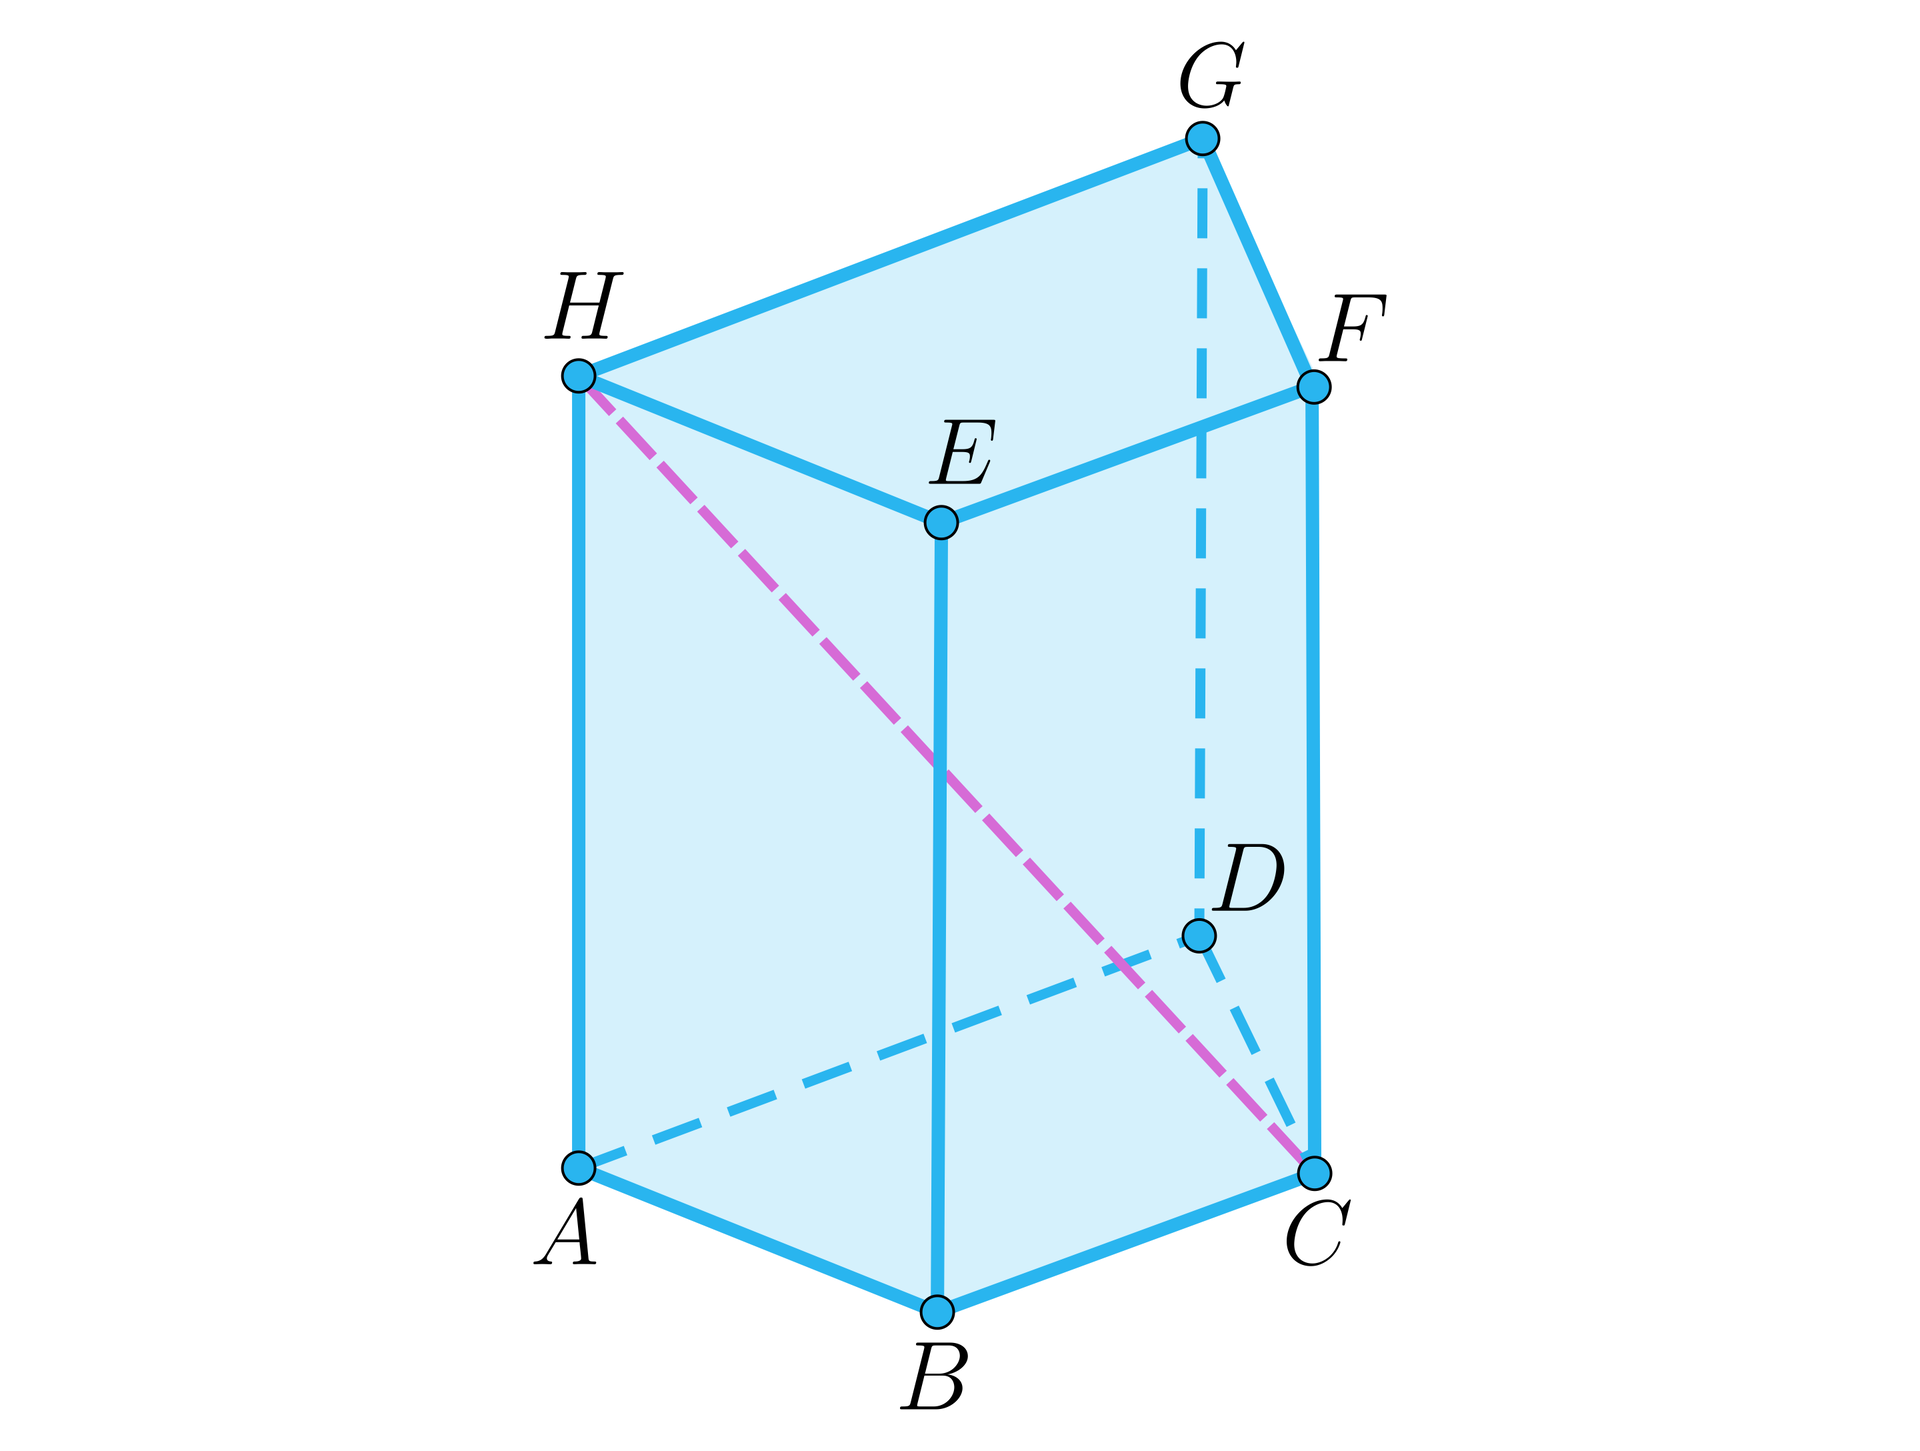 Na ilustracji zaznaczono graniastosłup czworokątny, który w podstawie ma trapez. Podstawę dolną oznaczono literami od A do D, natomiast górną literami od H do E do H. Odpowiednio nad wierzchołkiem A znajduje się wierzchołek H, nad wierzchołkiem B wierzchołek E, nad wierzchołkiem C wierzchołek F, nad wierzchołkiem D wierzchołek G. Zaznaczono przekątną graniastosłupa, łączącą wierzchołki C i H.